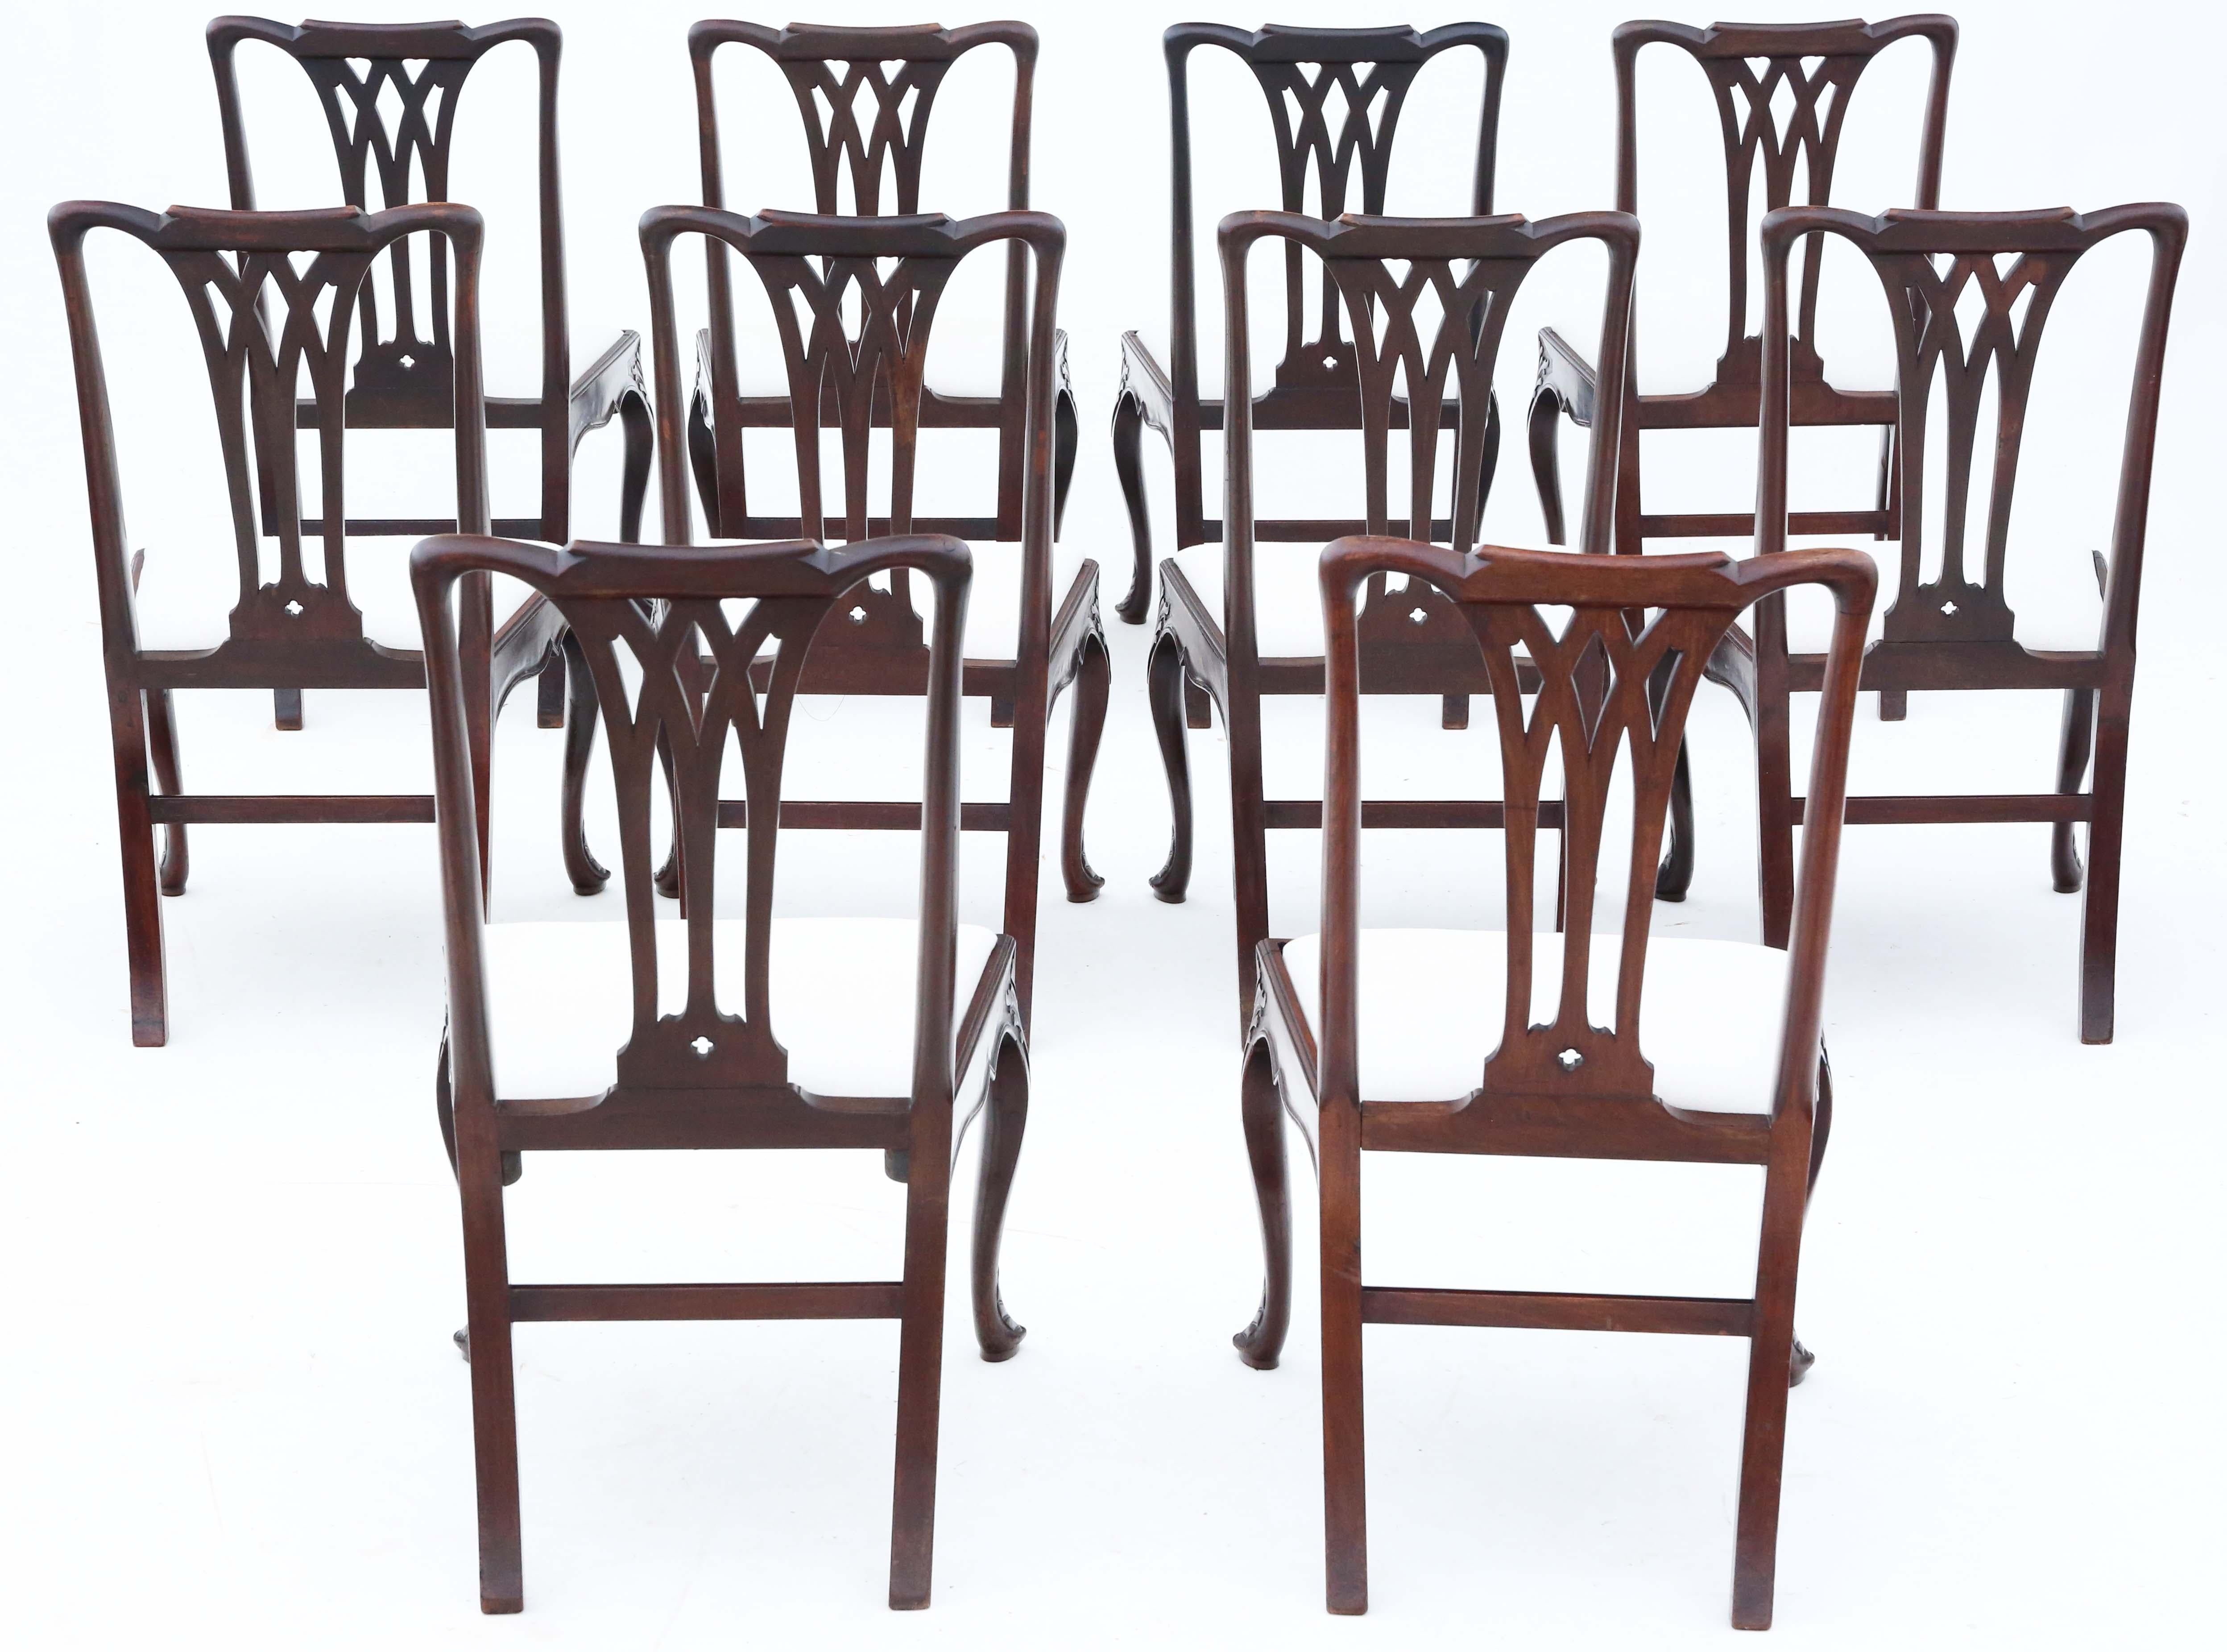 Découvrez l'élégance d'une trouvaille rare avec cet ensemble exquis de 10 chaises de salle à manger en acajou sculpté de style géorgien du XVIIIe siècle, probablement d'origine cubaine. Chaque chaise témoigne d'un travail artisanal de qualité, avec